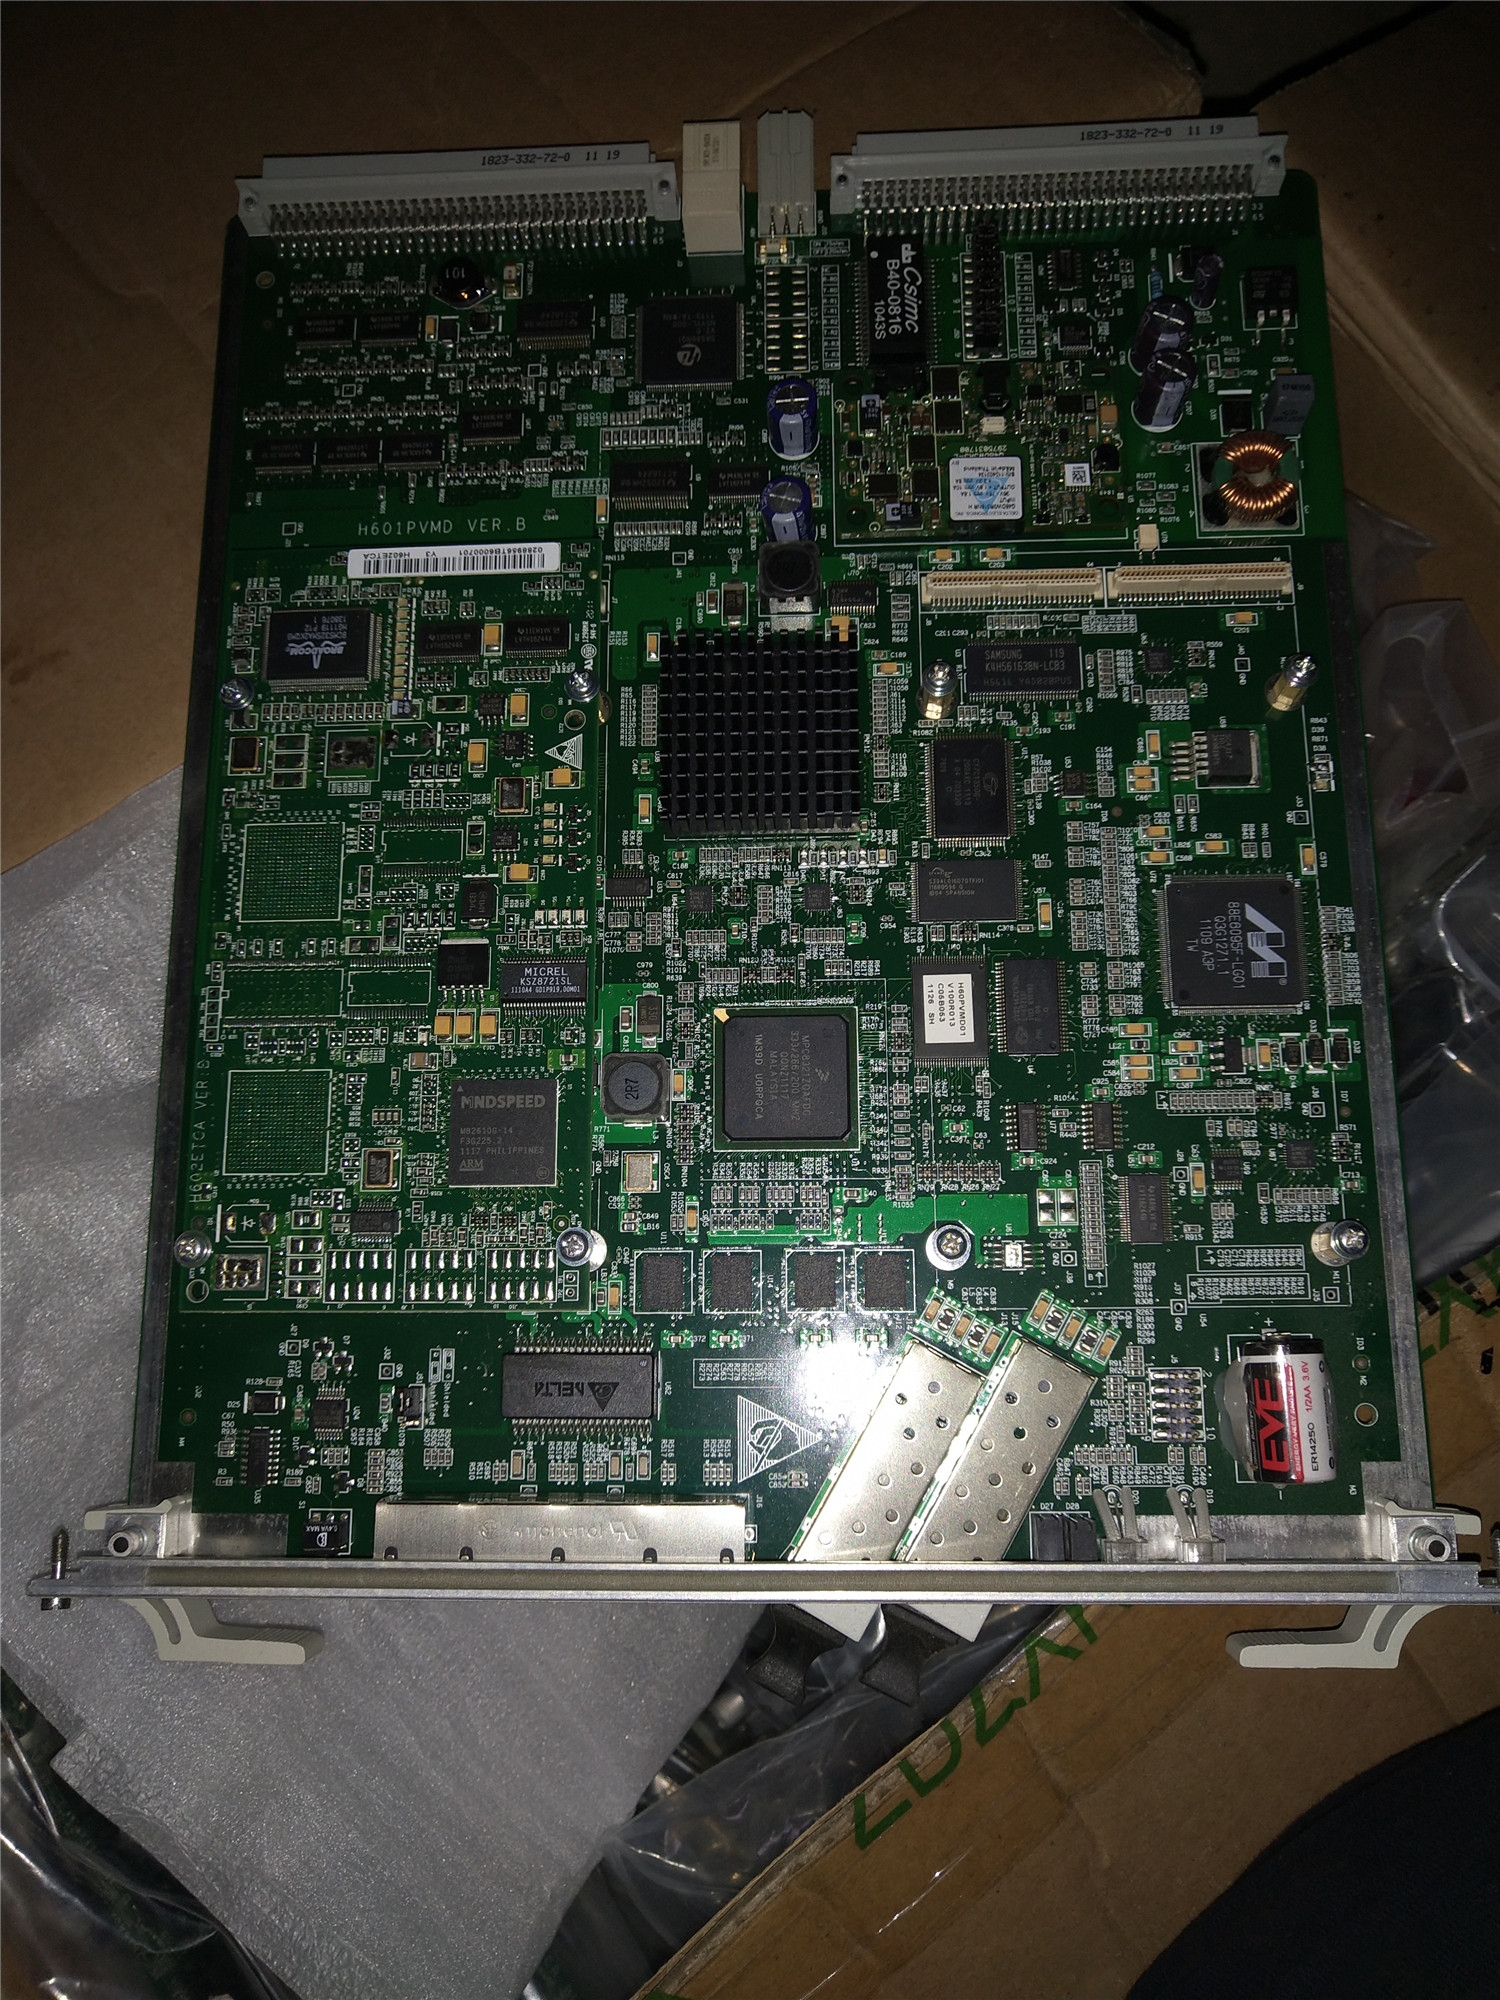 拆机华为 UA5000 主控板卡 H601 PVMD 分组语音模块 拆机华为,UA5000,主控板卡,H601 PVMD,分组语音模块